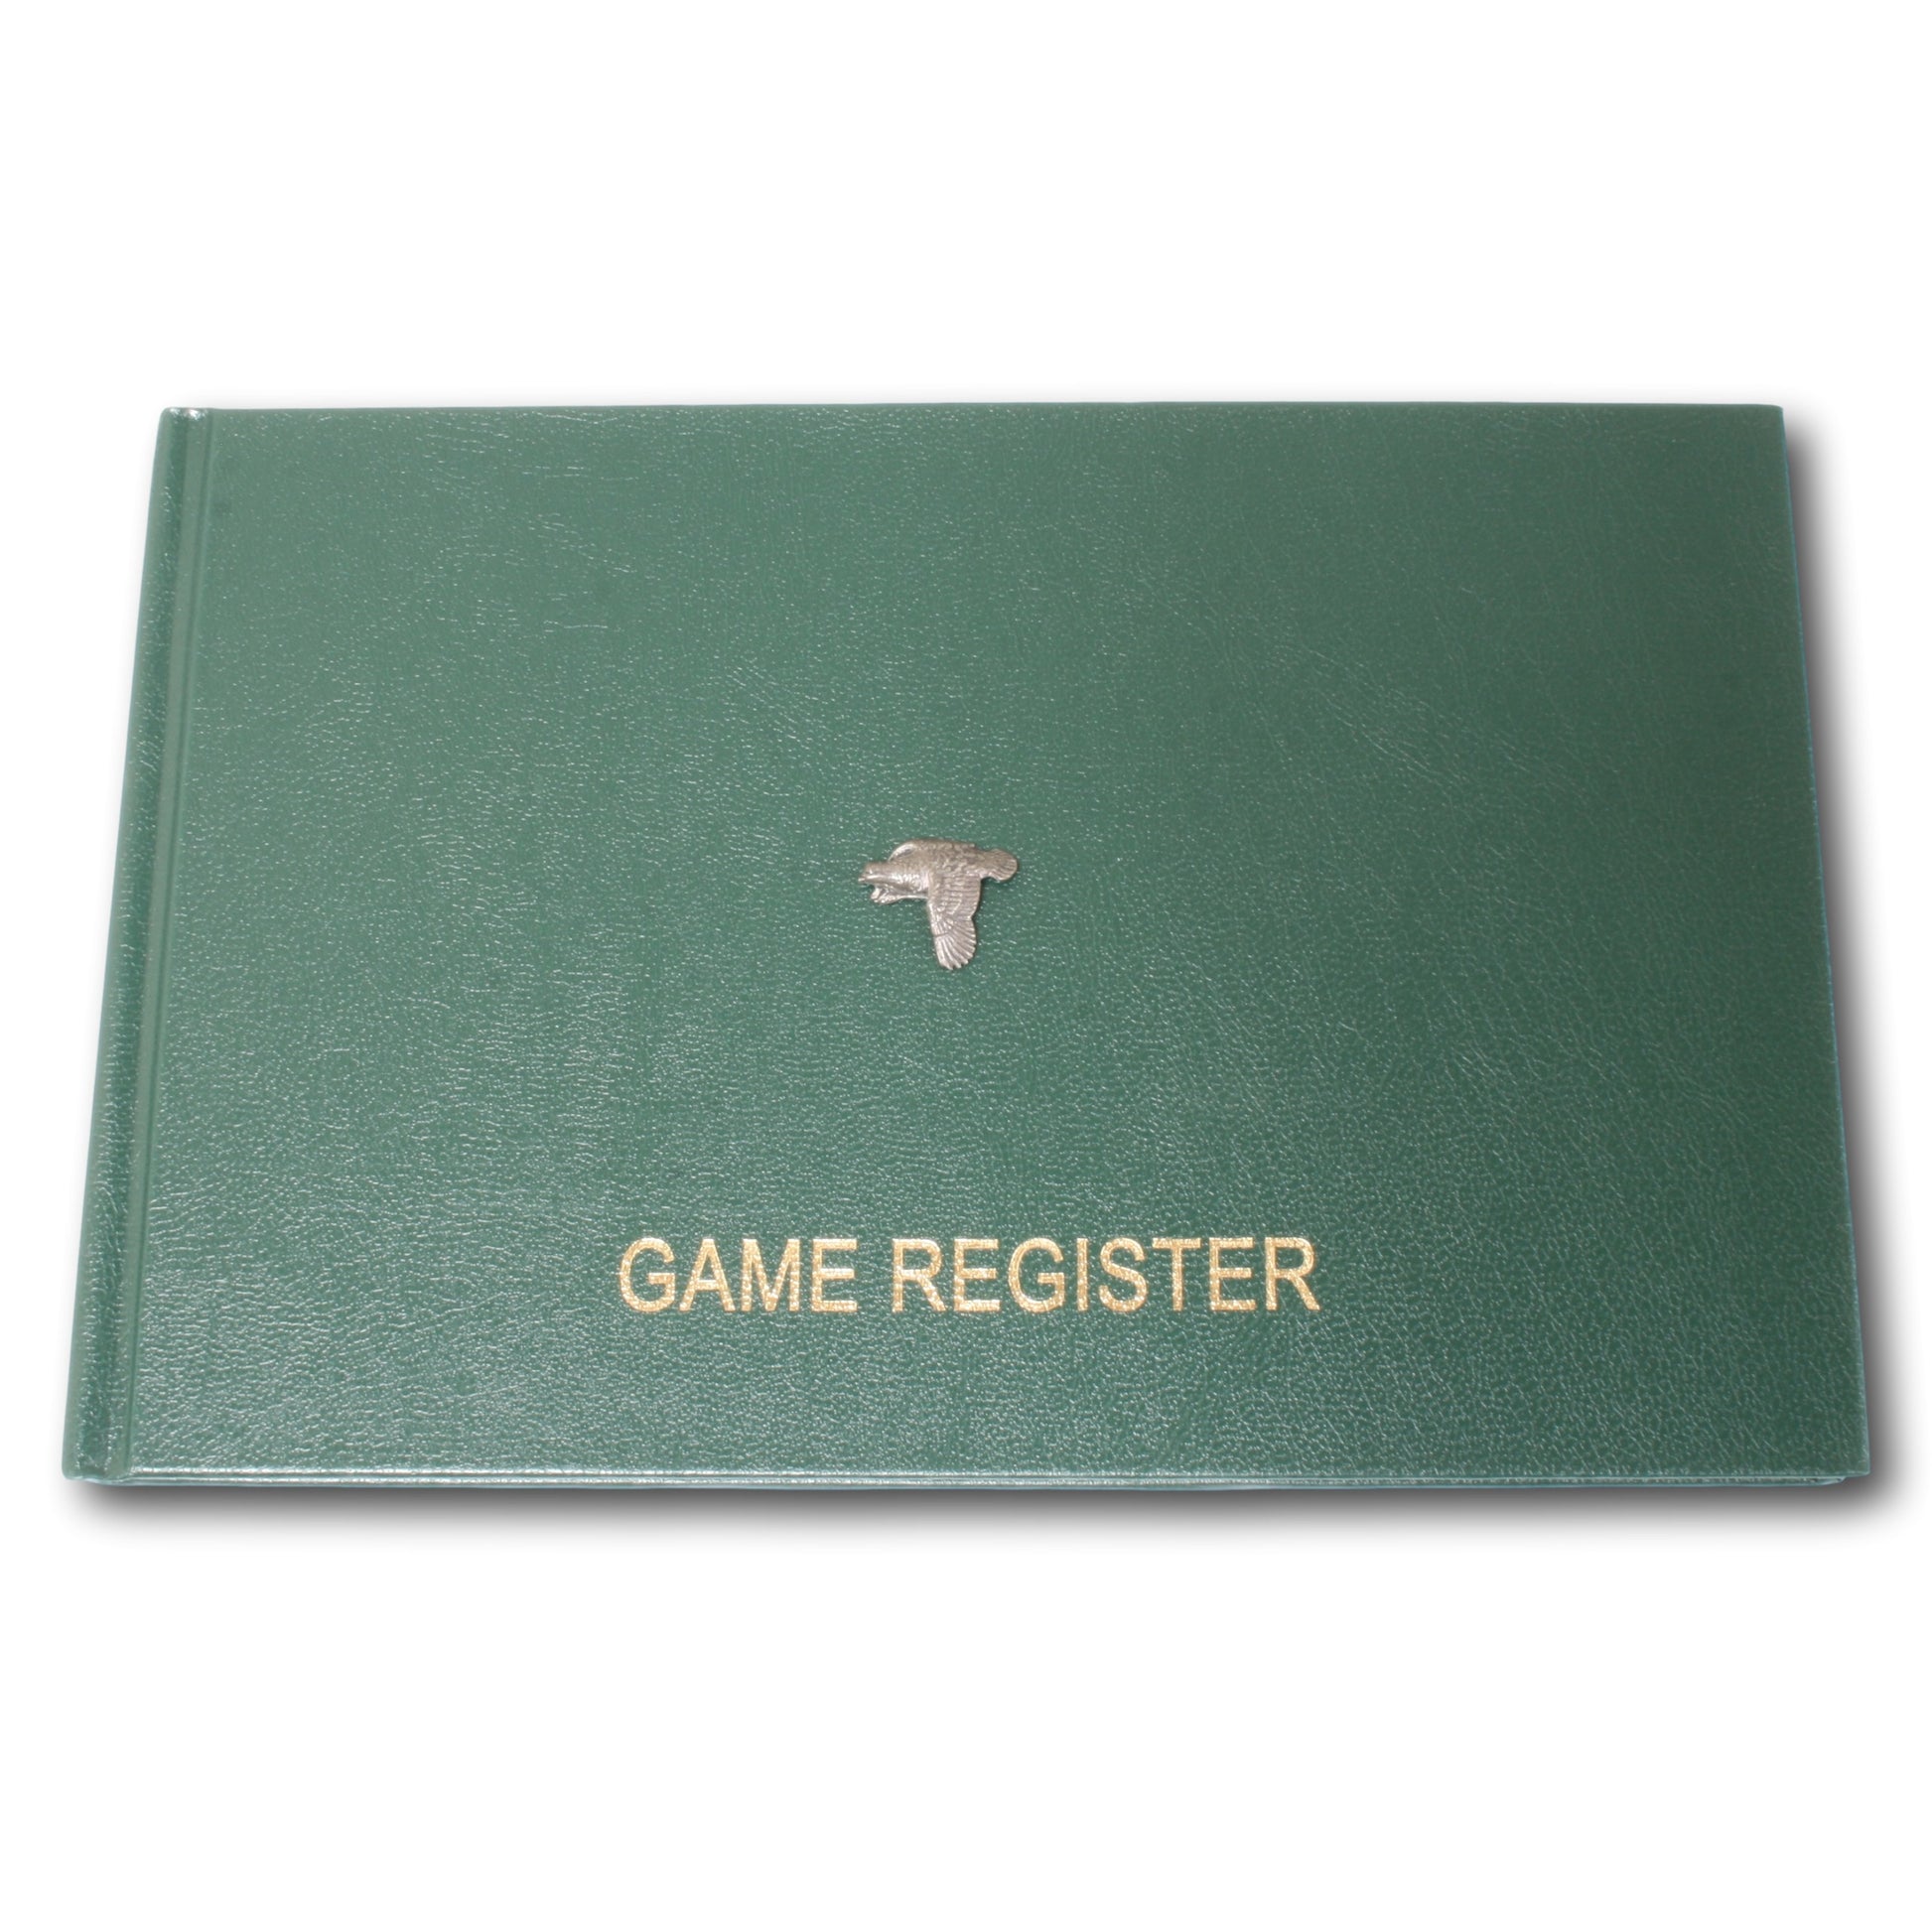 Grouse Flying Game Register